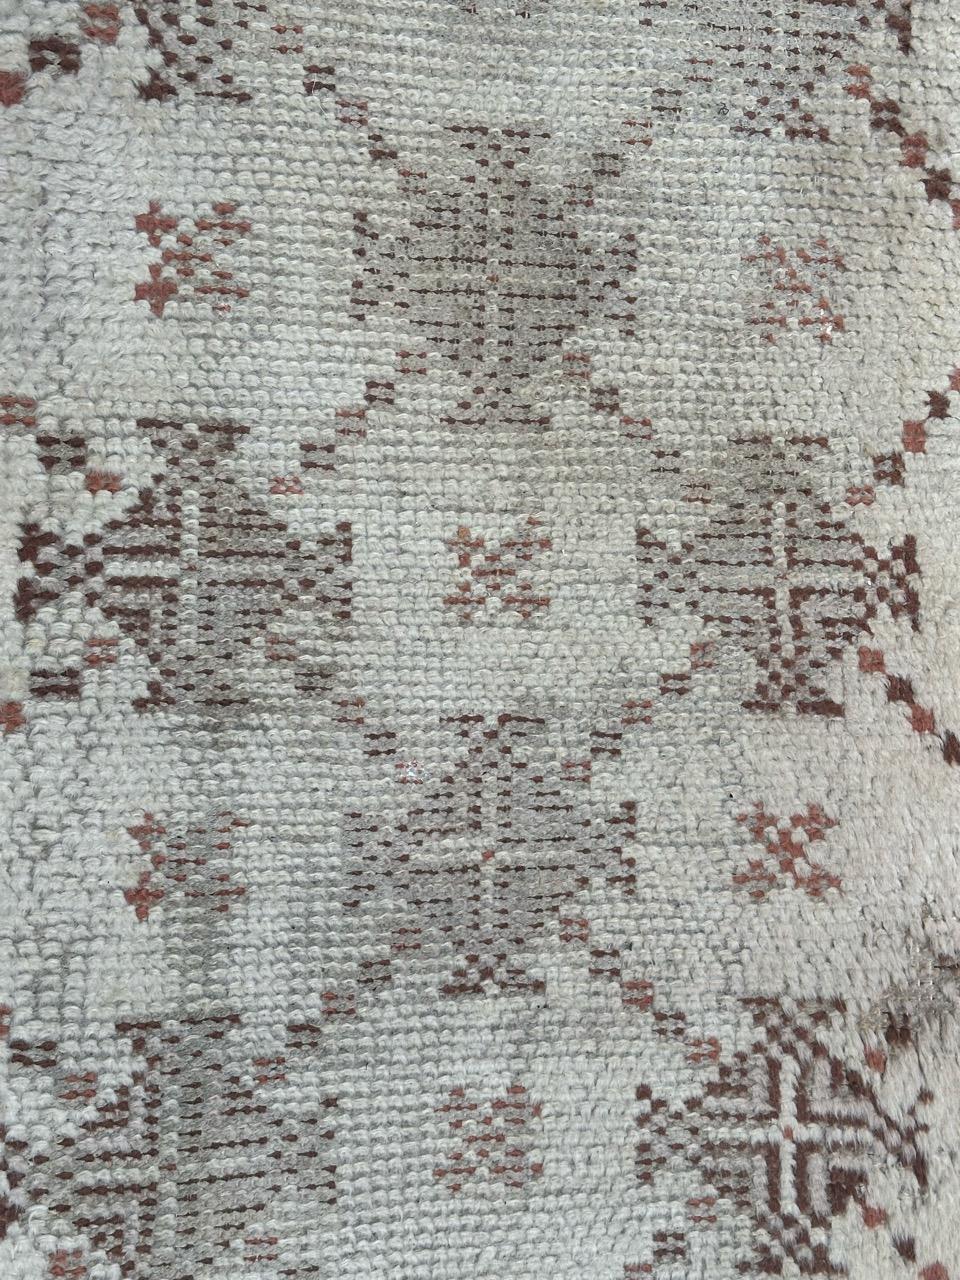 Schöne Mitte des Jahrhunderts Stammes Beni Ouarain marokkanischen Teppich mit einem geometrischen Design und mit und braunen Farben, einheitliche trägt, vollständig von Hand geknüpft mit Wolle auf Baumwollbasis 

✨✨✨
